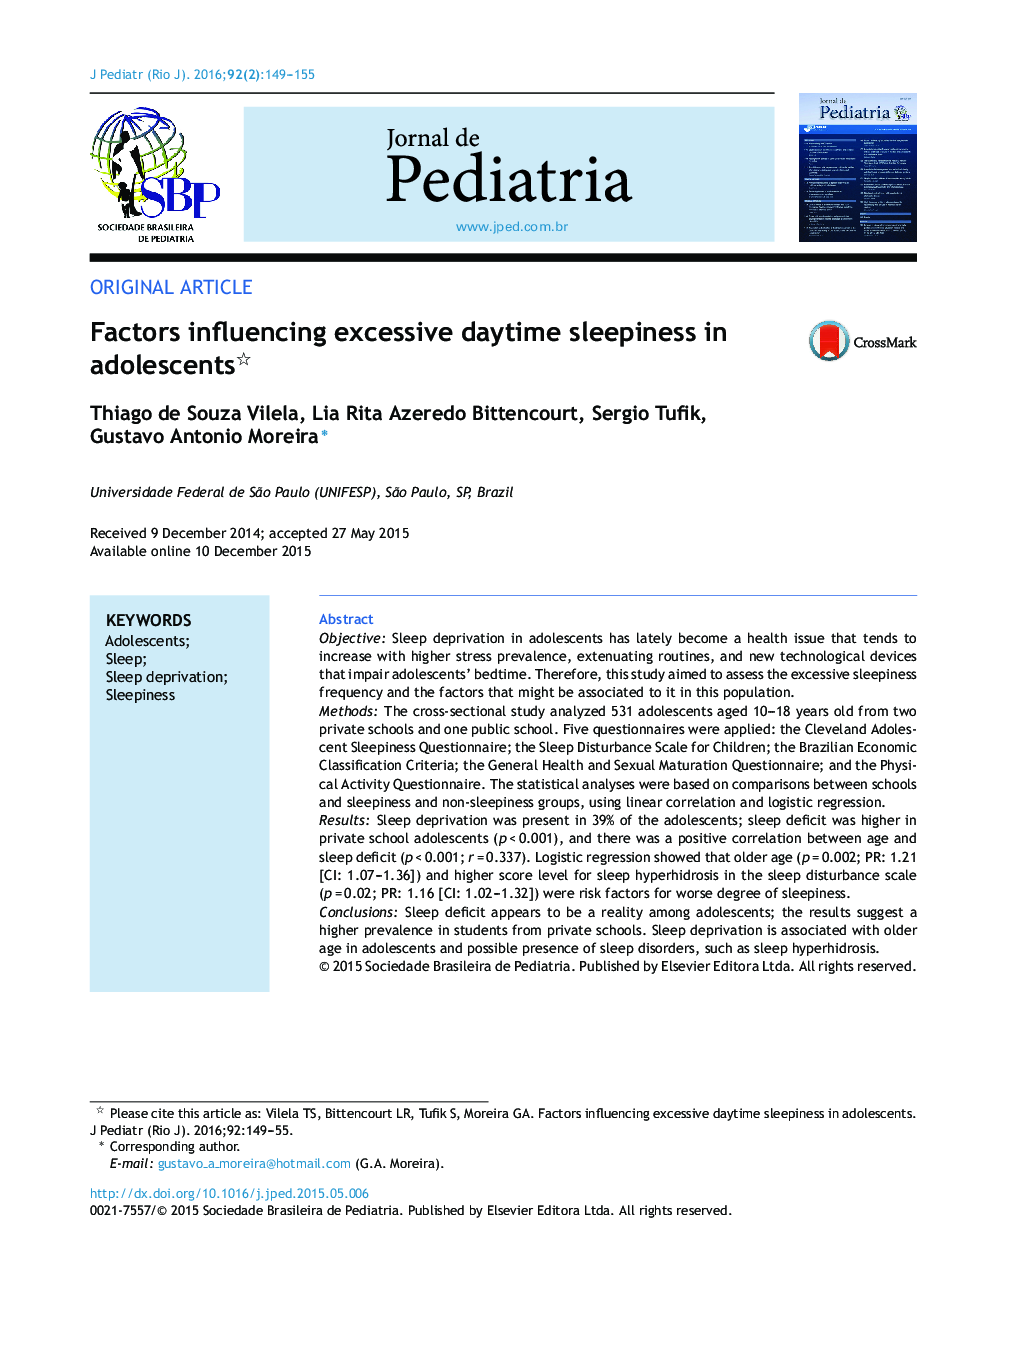 Factors influencing excessive daytime sleepiness in adolescents 